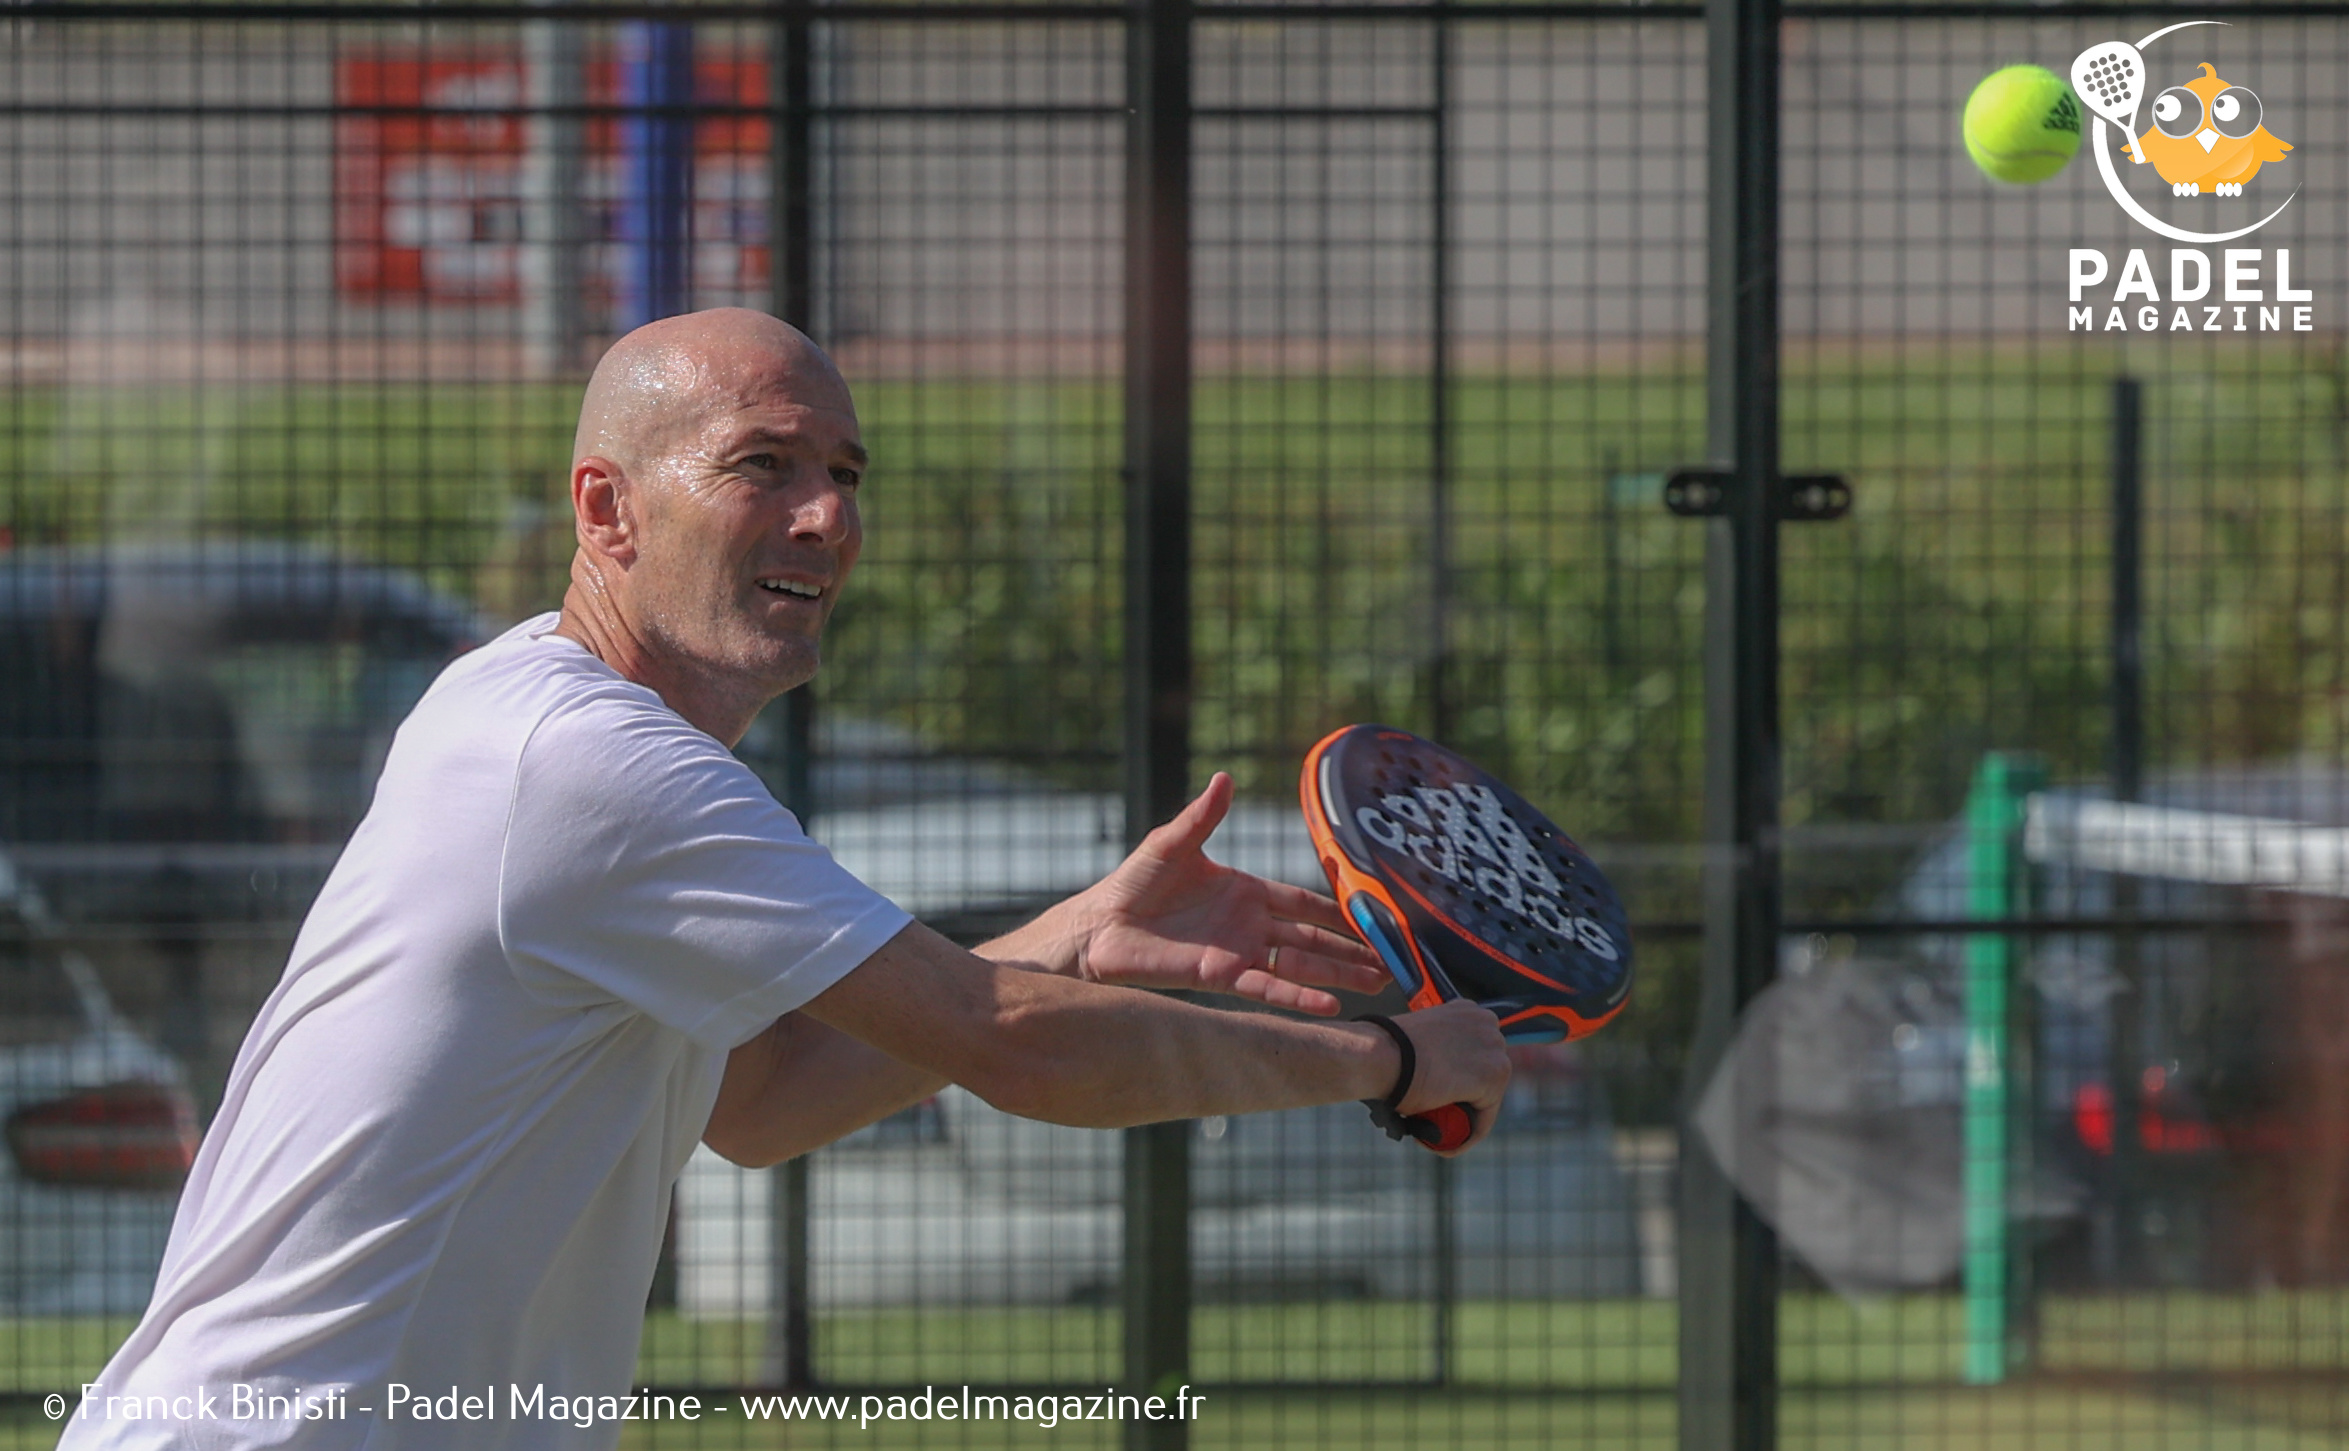 Zidane: „Die padel entwickelt sich in Frankreich mit hoher Geschwindigkeit“